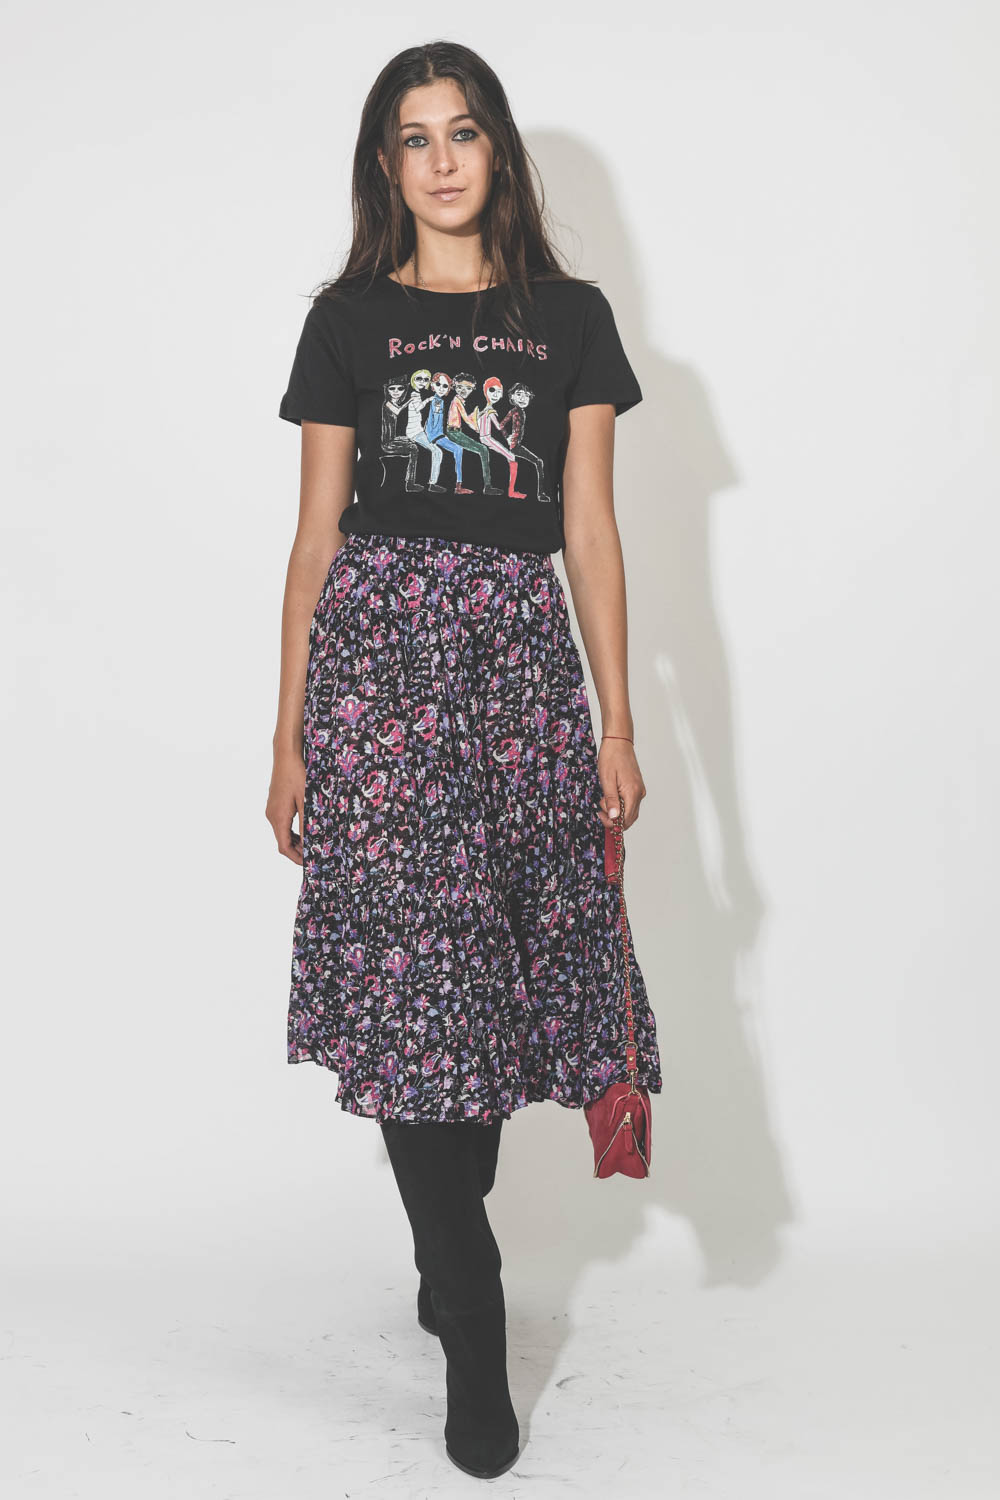 Jupe longue à volants en voile de coton imprimé fond noir fleurs rose Elfa Marant Etoile. Porté avec un tee-shirt noir rock.